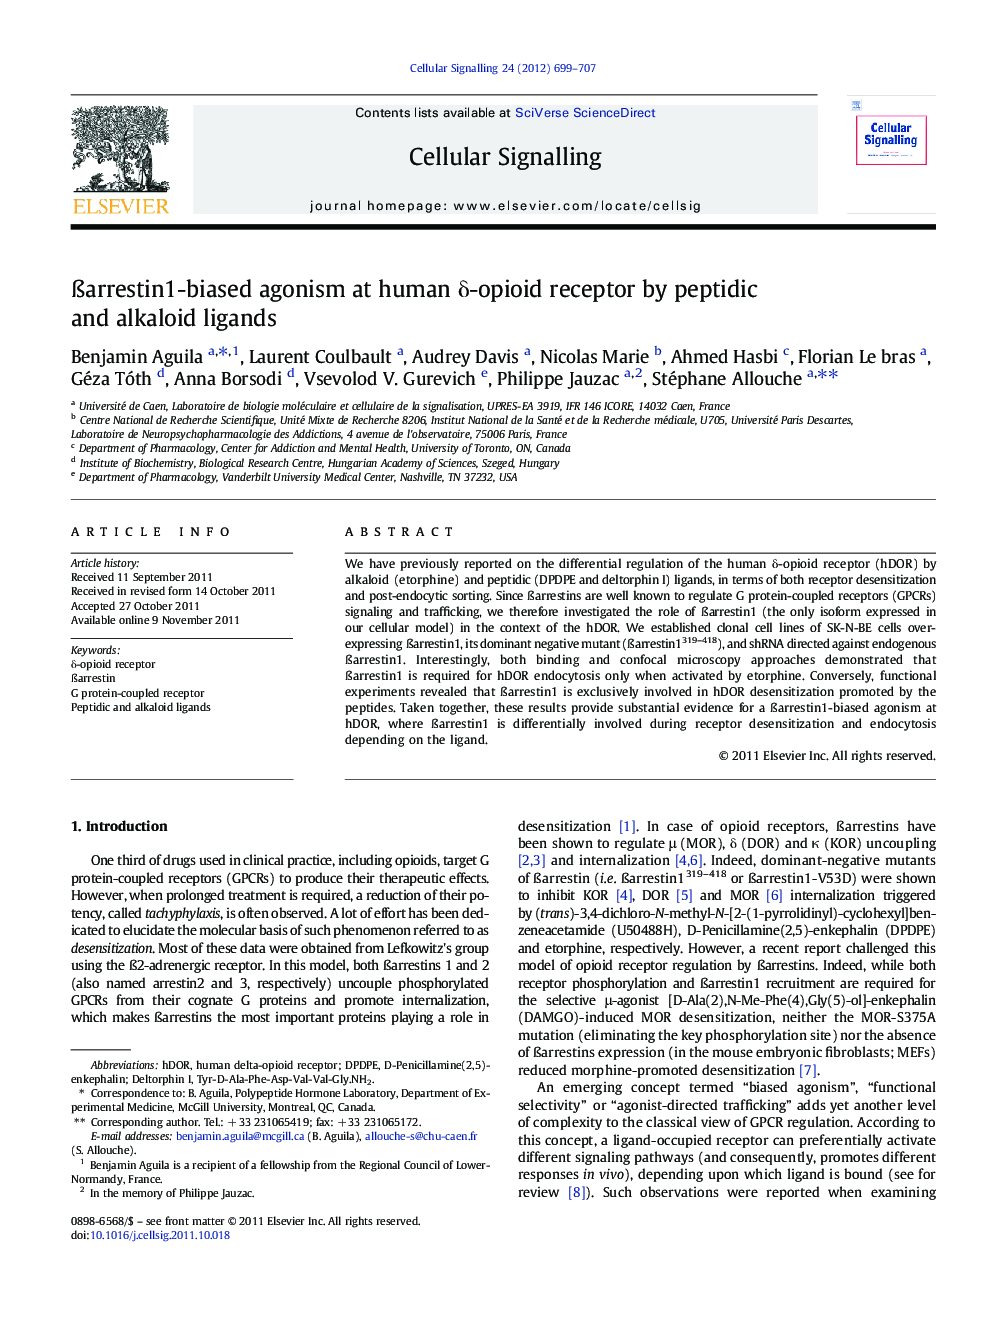 Ãarrestin1-biased agonism at human Î´-opioid receptor by peptidic and alkaloid ligands